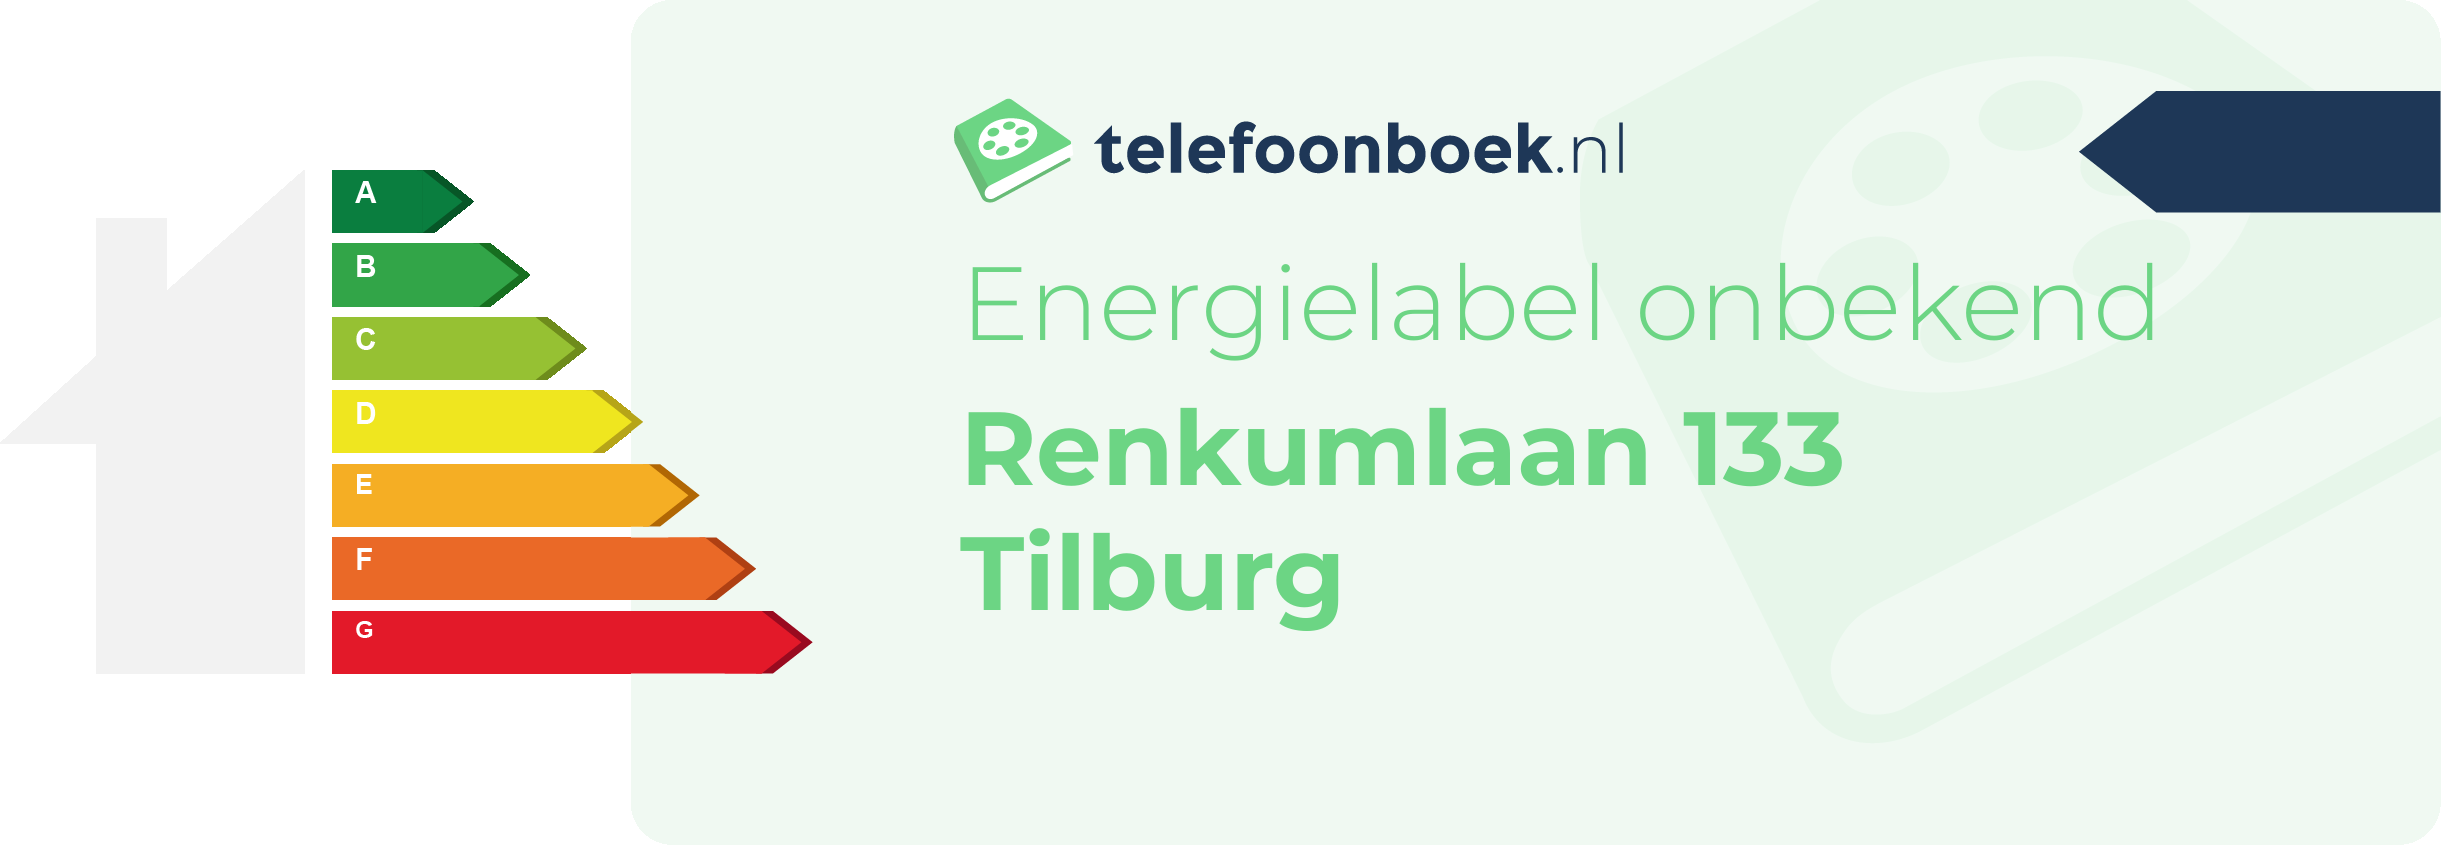 Energielabel Renkumlaan 133 Tilburg